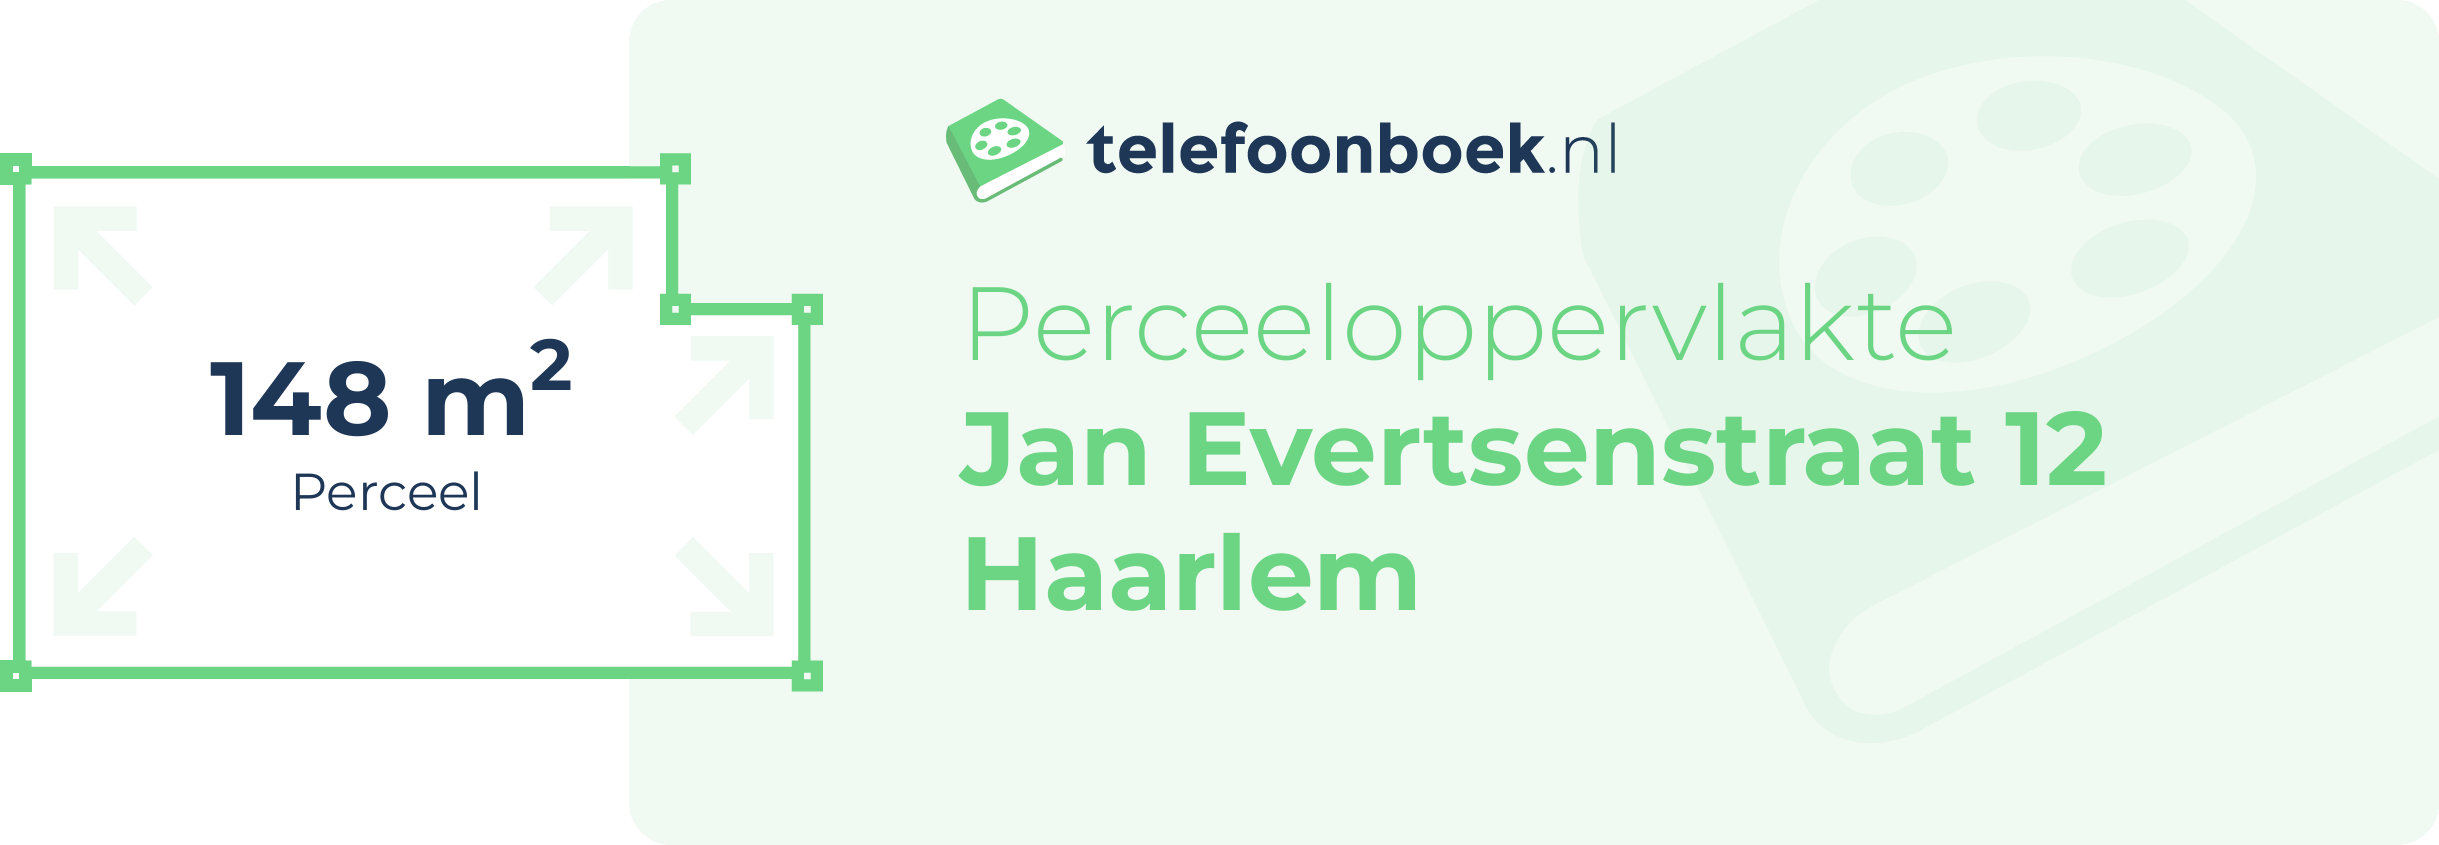 Perceeloppervlakte Jan Evertsenstraat 12 Haarlem